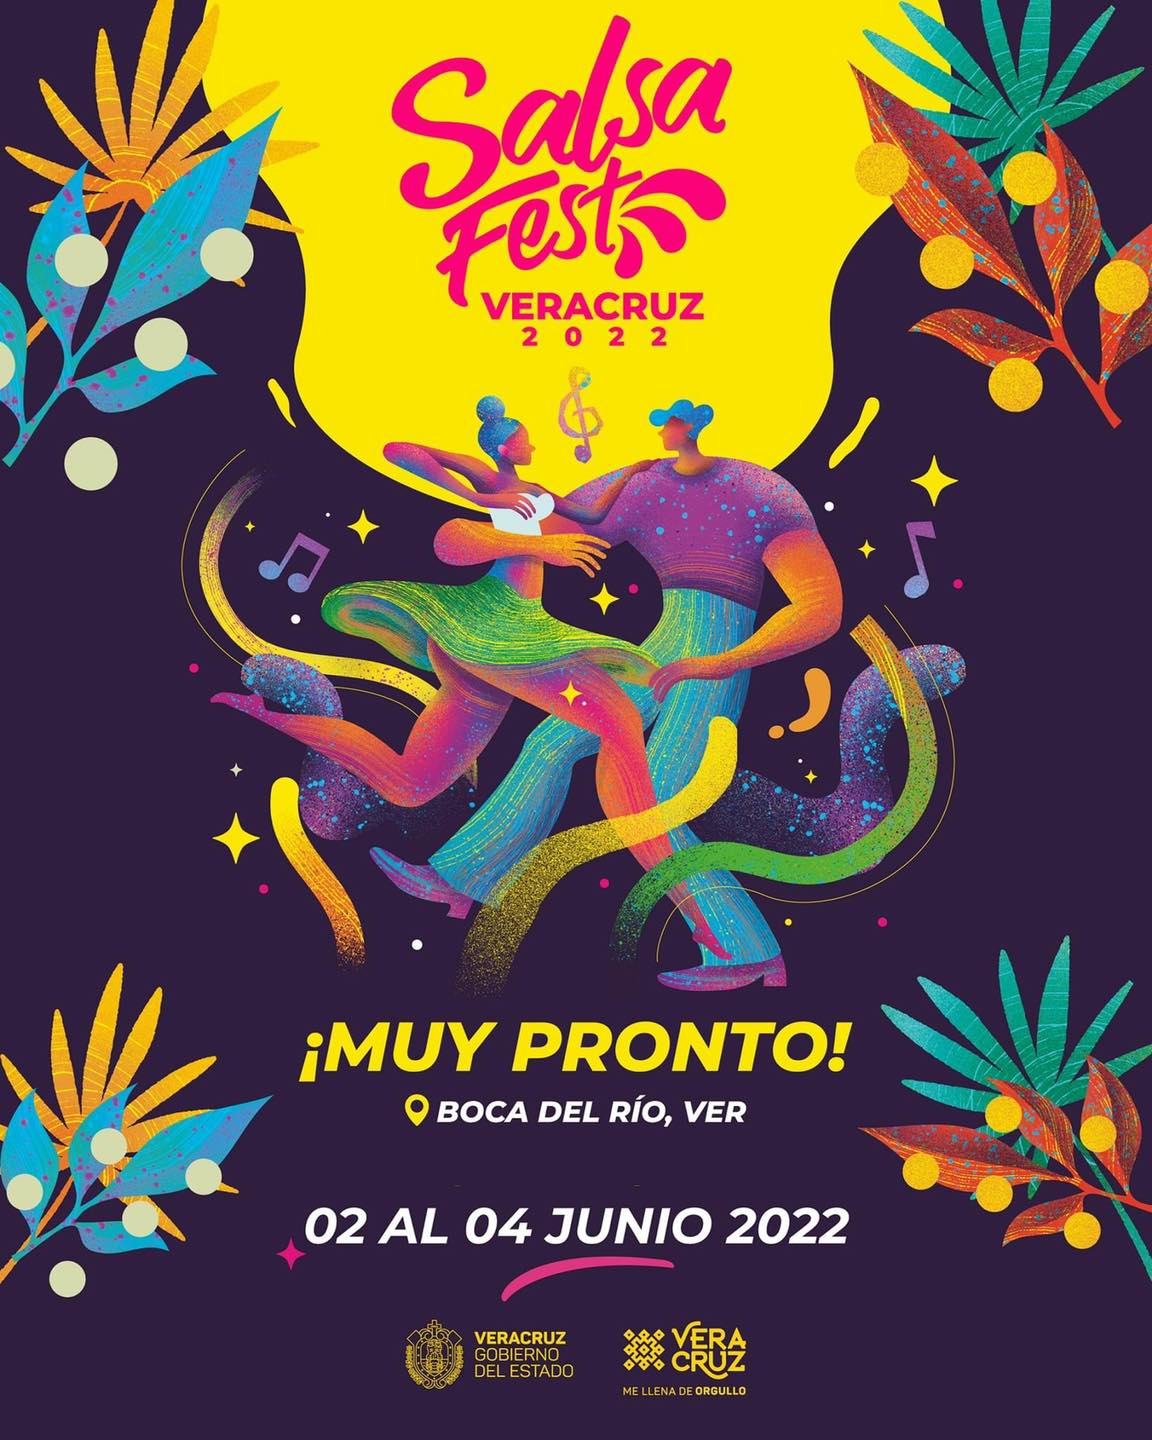 Listo el Festival de la Salsa 2022 en Boca del Río La Info de Veracruz